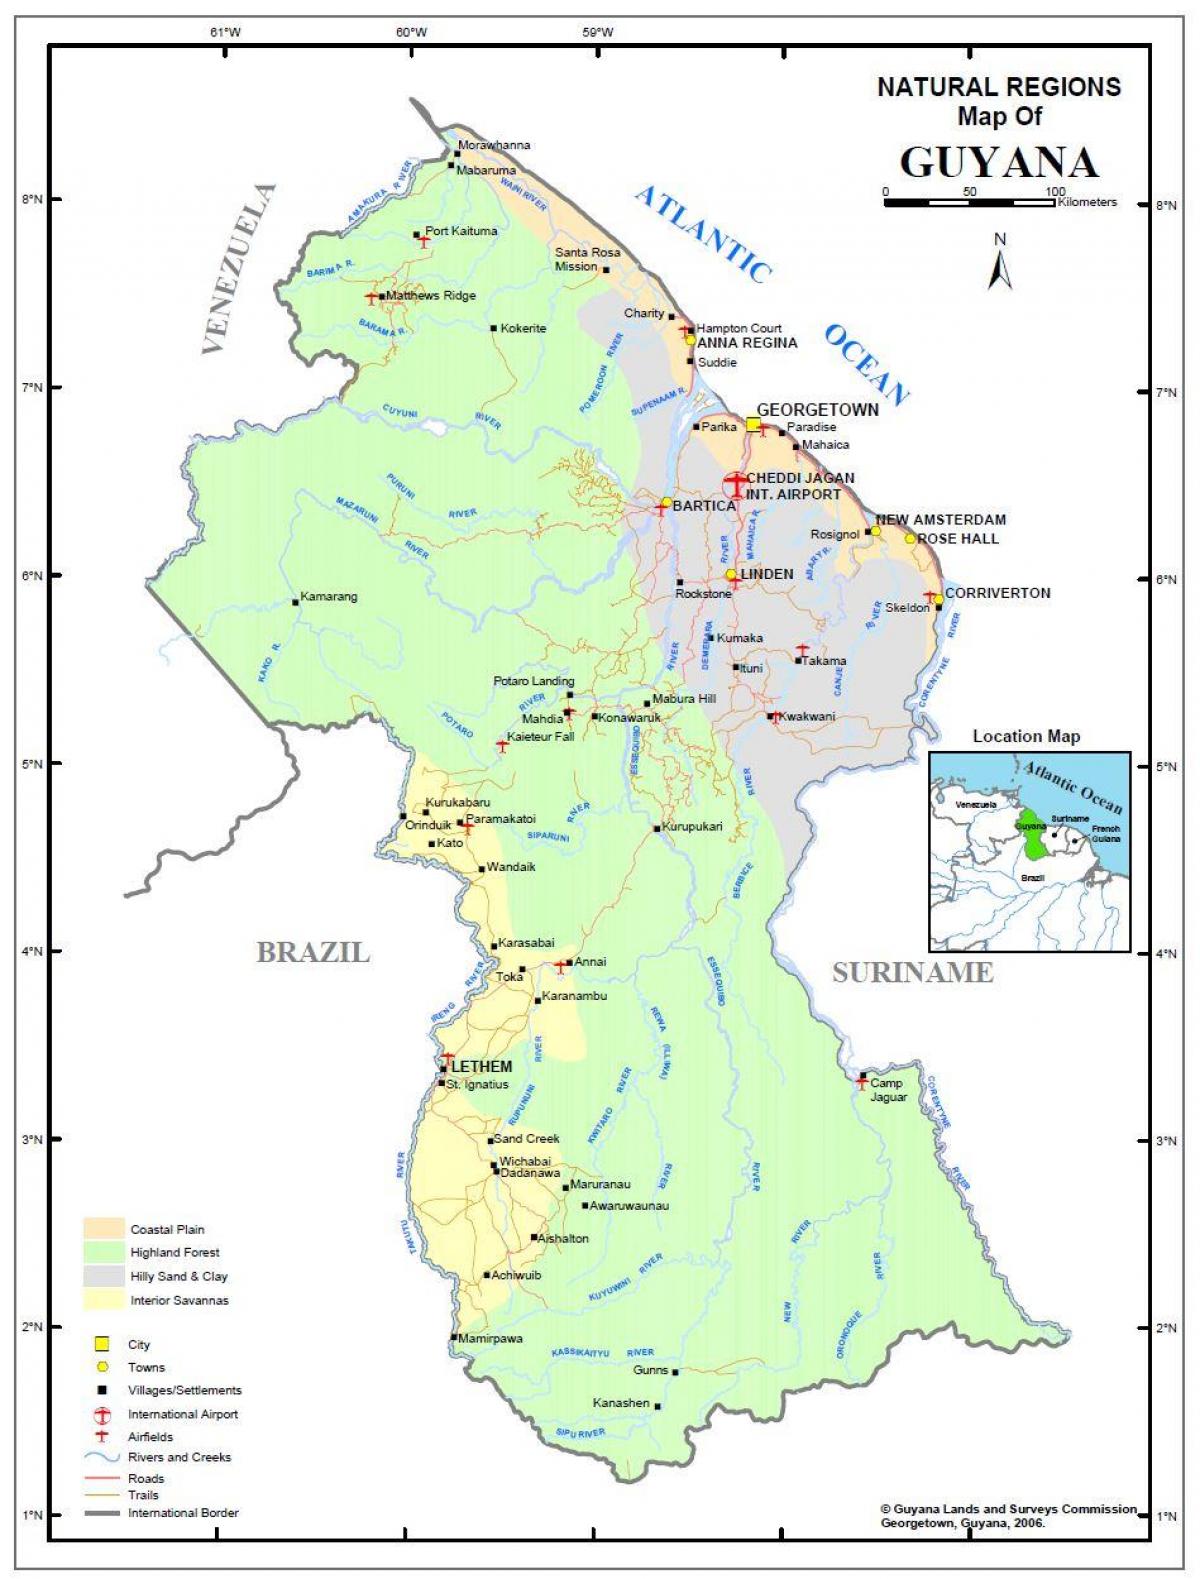 zemljevid Gvajana, ki prikazuje 4 naravna območja